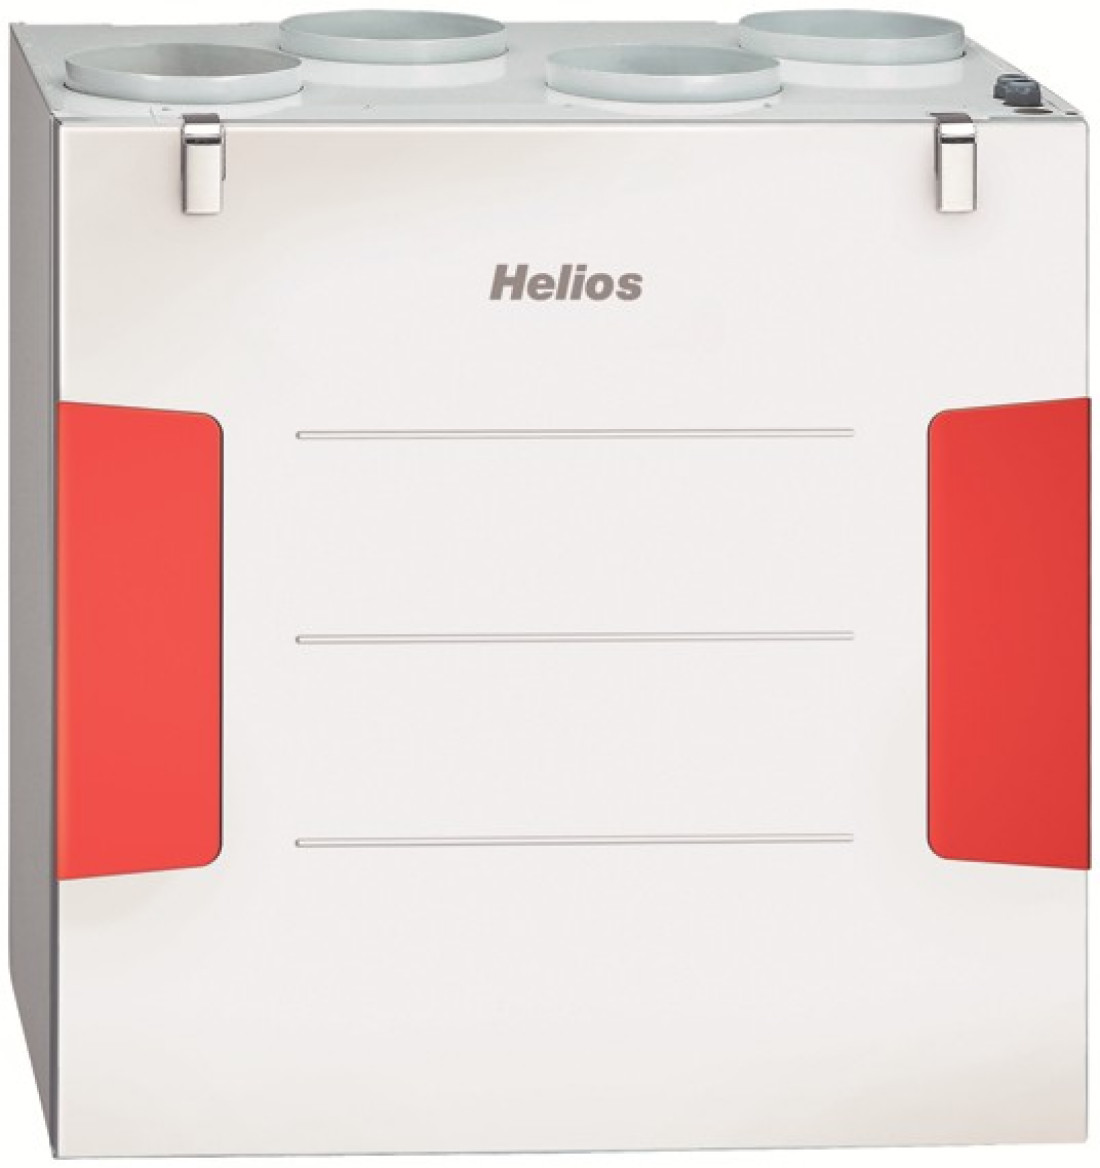 Helios - centrale wentylacyjne z wymiennikami entalpicznymi